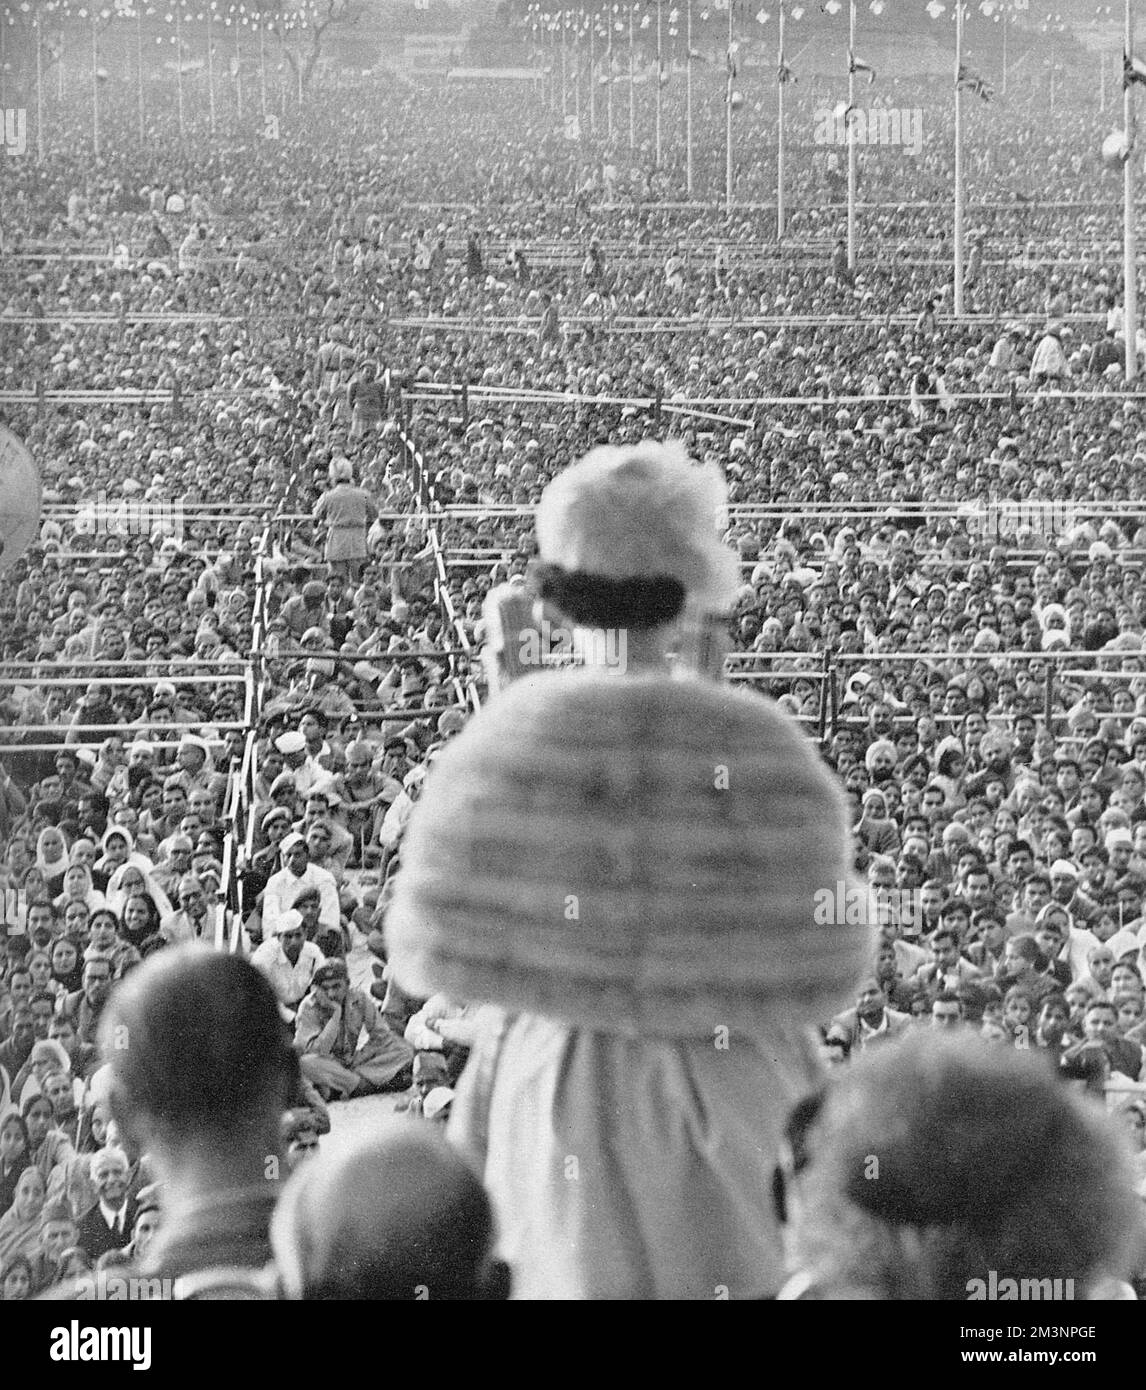 Une vaste foule écoutant la reine Elizabeth II prononcera un discours sur le terrain de Ramlila à l'extérieur de la vieille ville de Delhi lors de la visite royale de l'Inde en 1961. Le public a été estimé à 250 000. Date: 1961 Banque D'Images